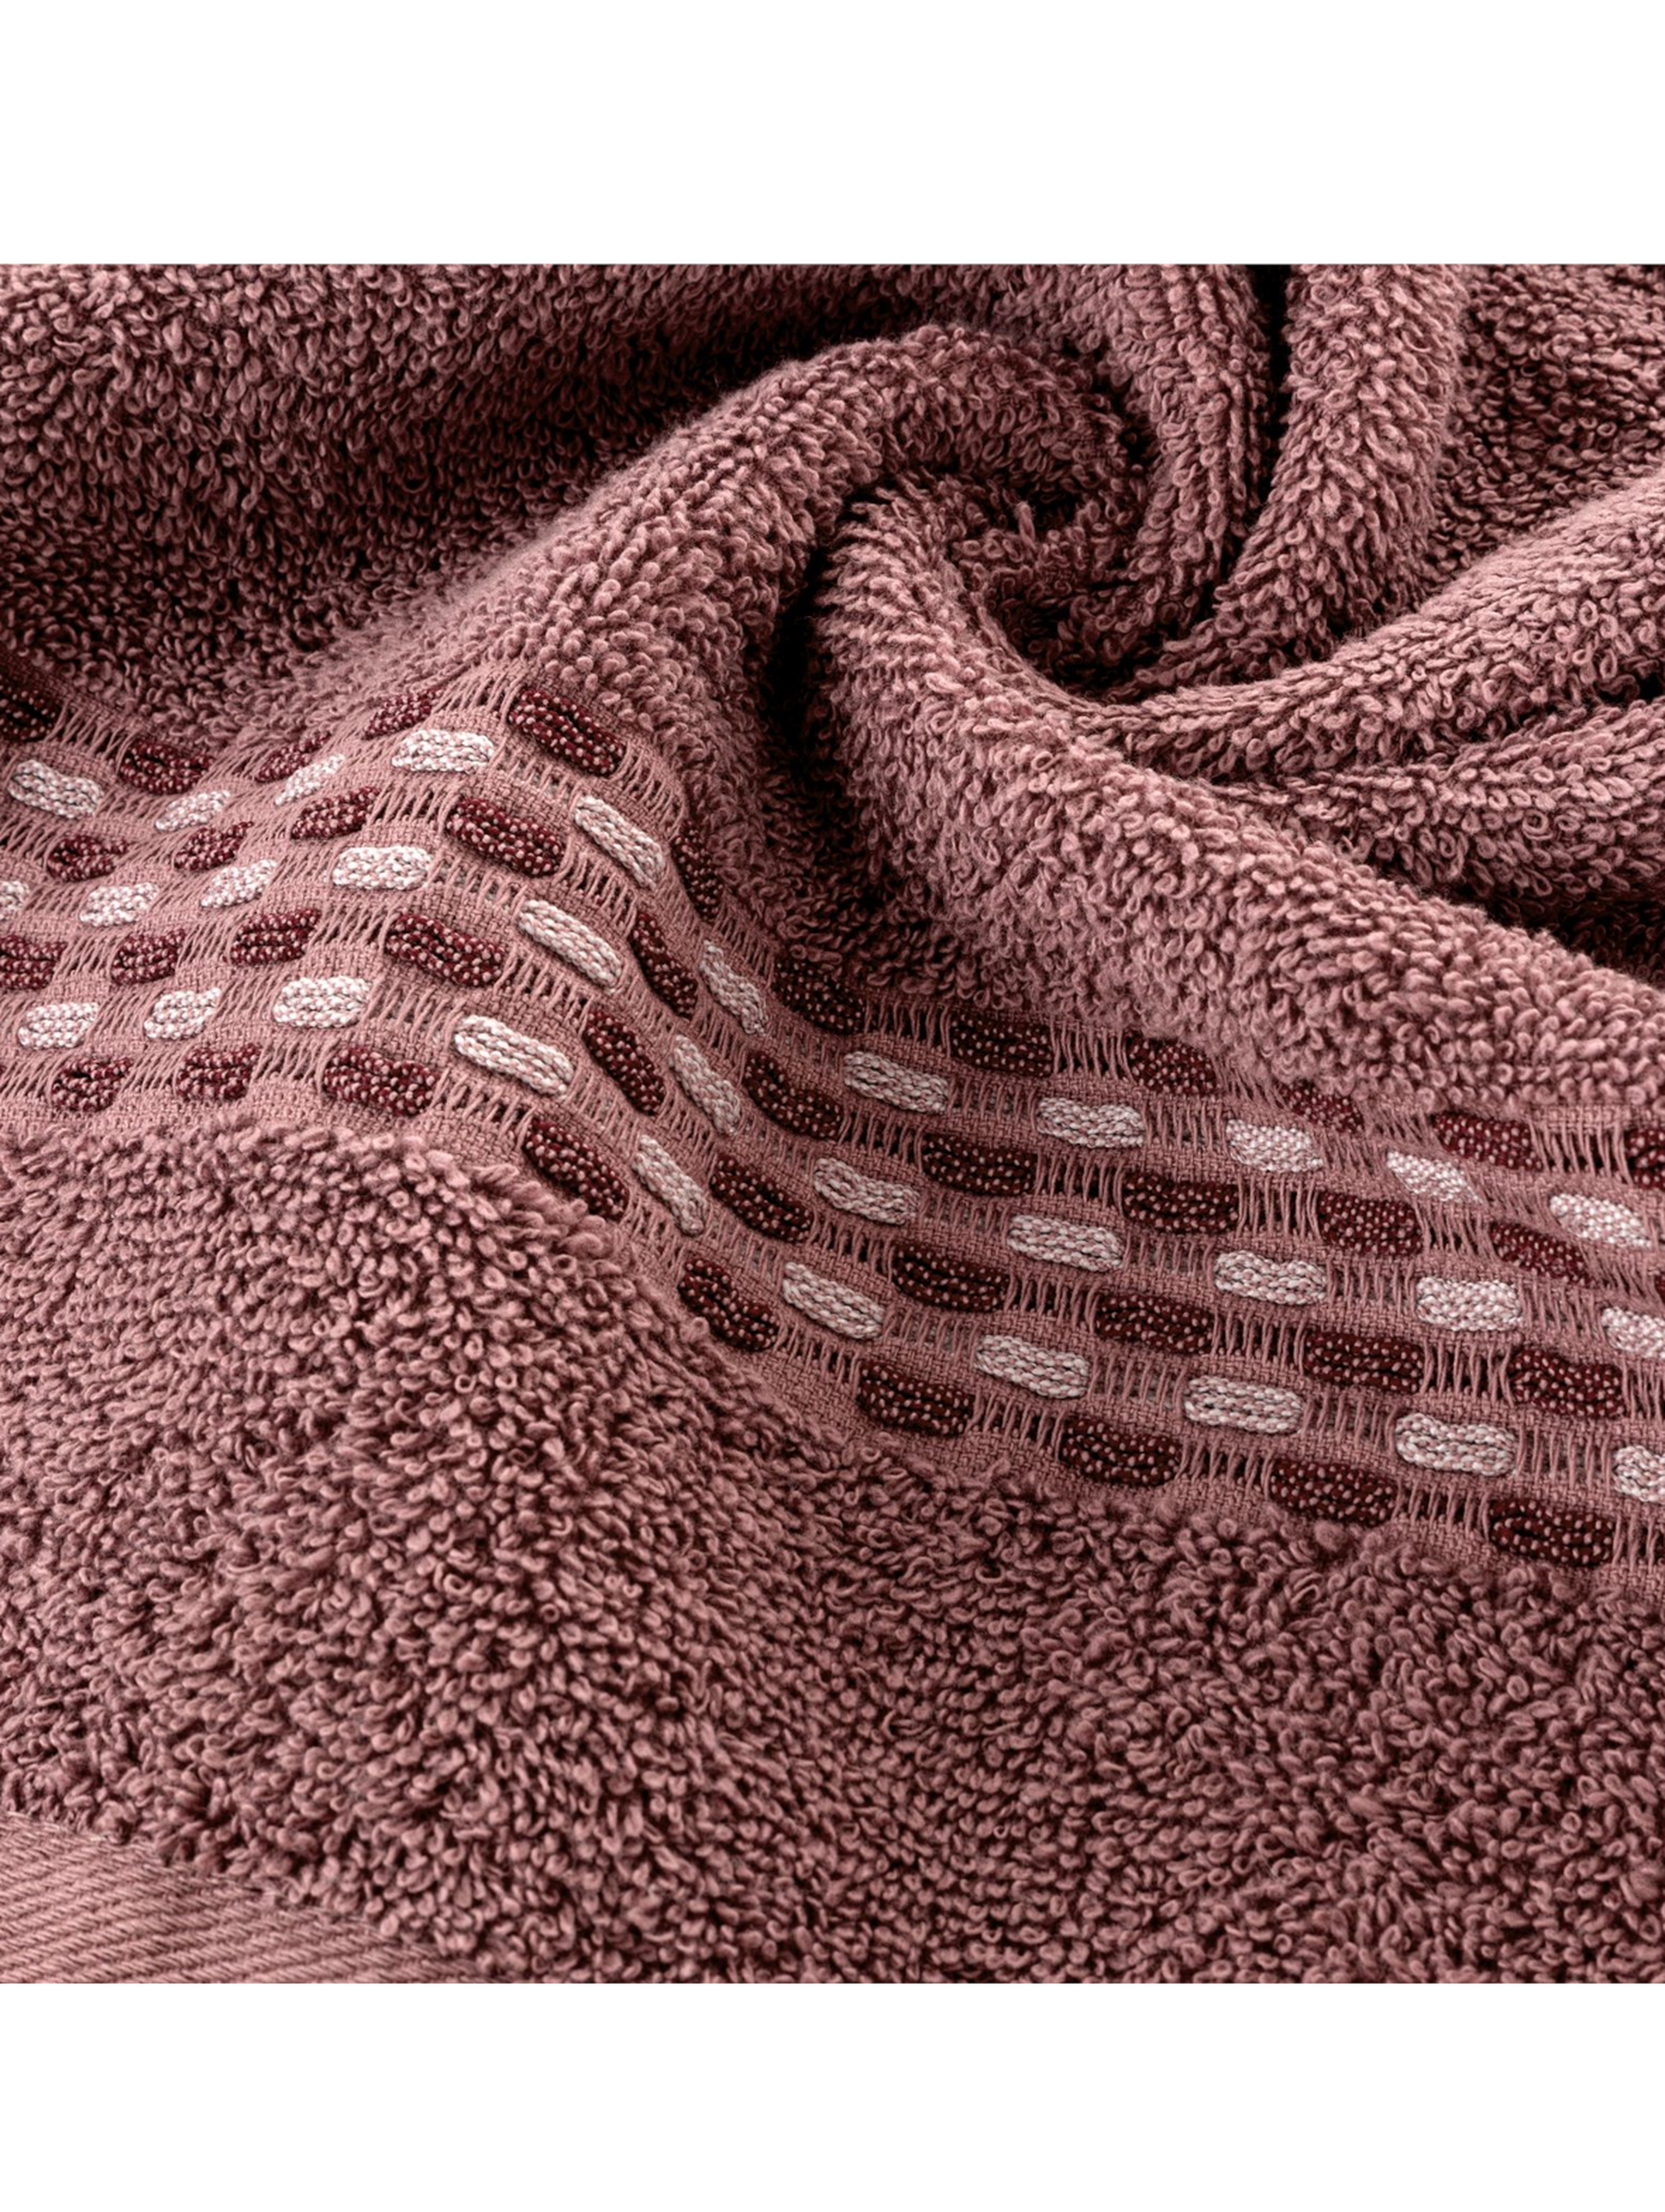 Różowy ręcznik ze zdobieniami 50x90 cm